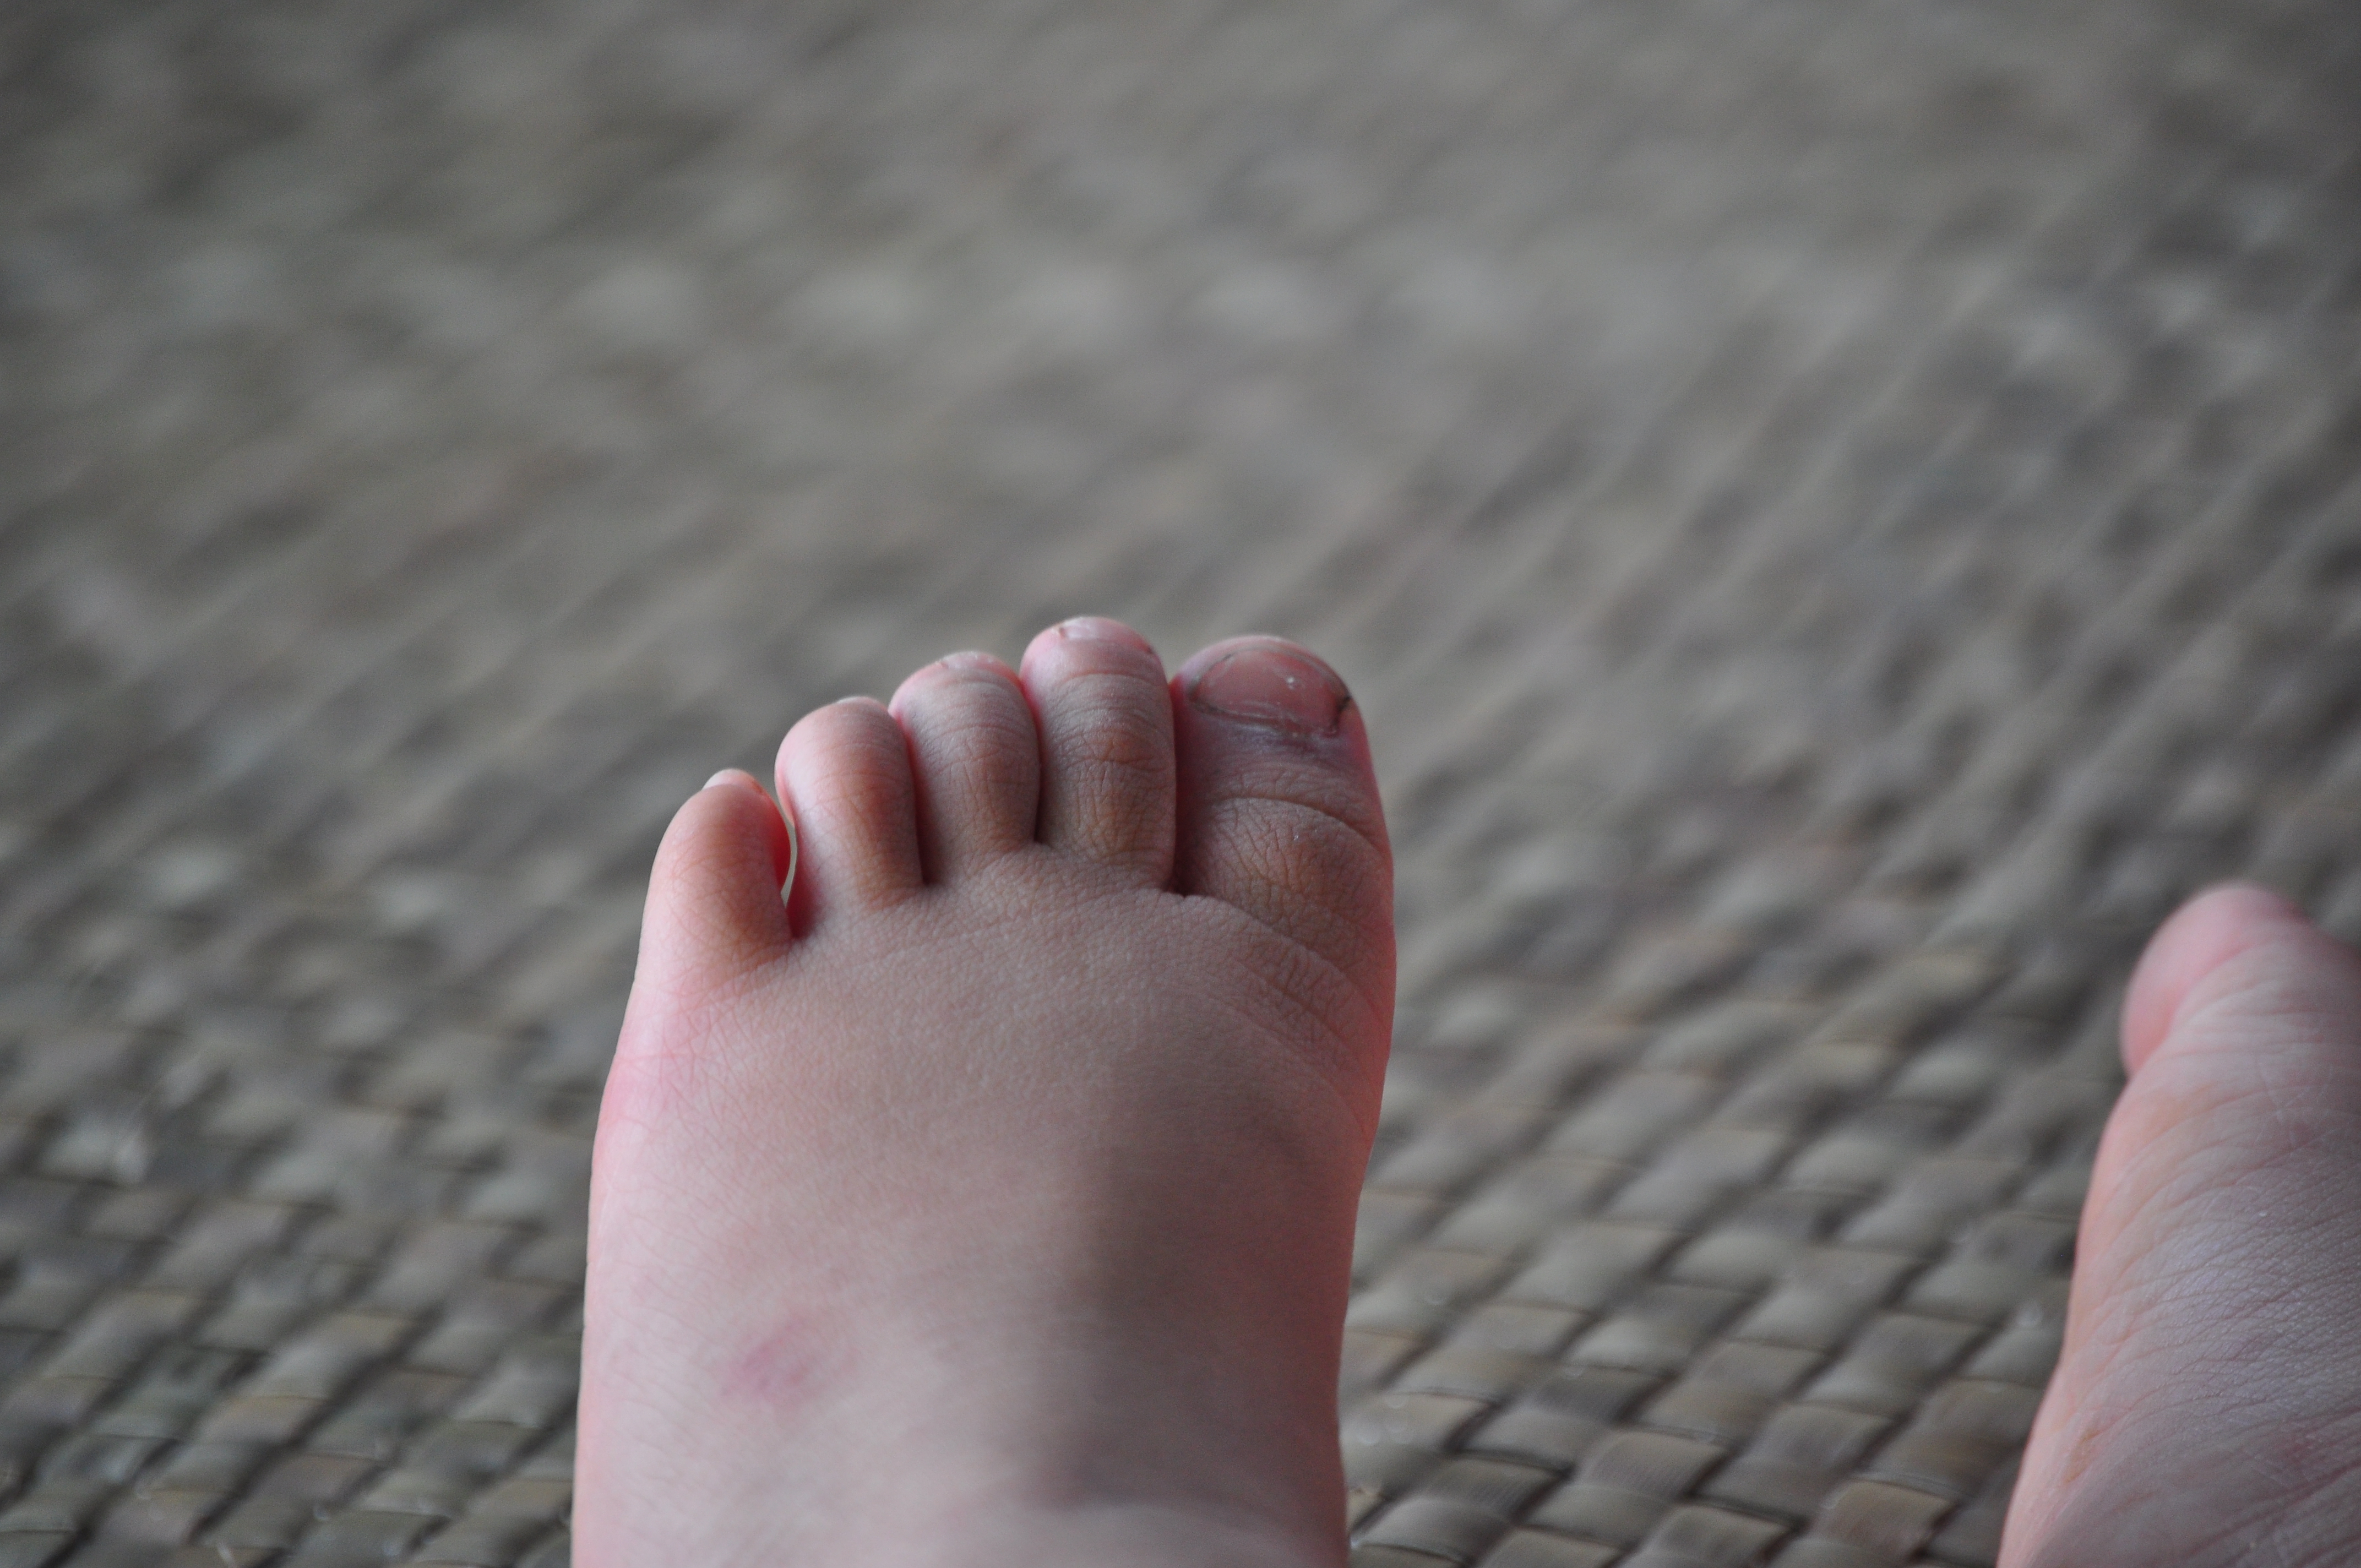 Детские feet